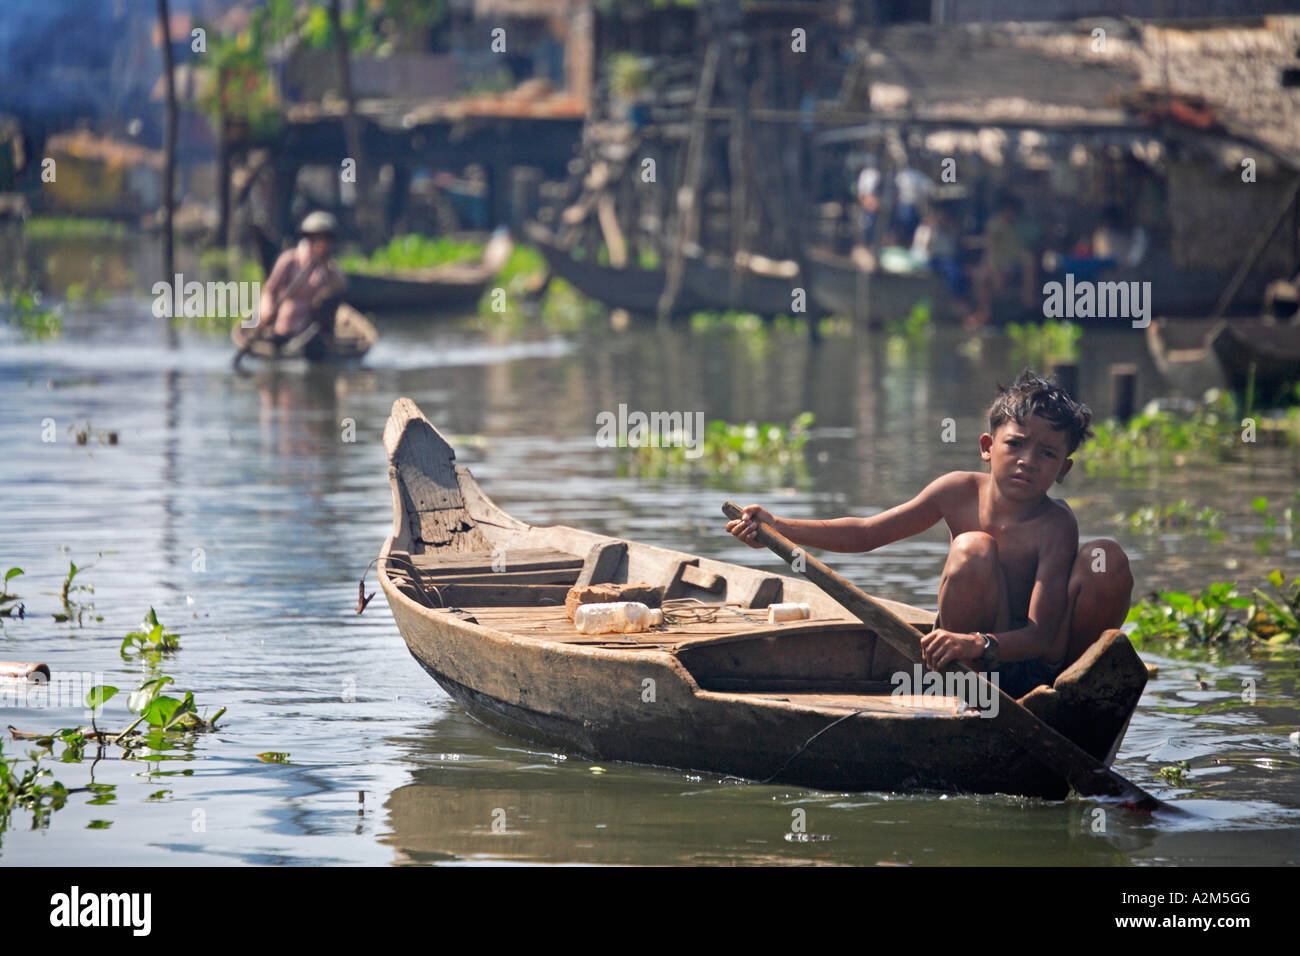 Jeune garçon en voile, Kompong Khleang village flottant, Tonle Sap, au Cambodge Banque D'Images